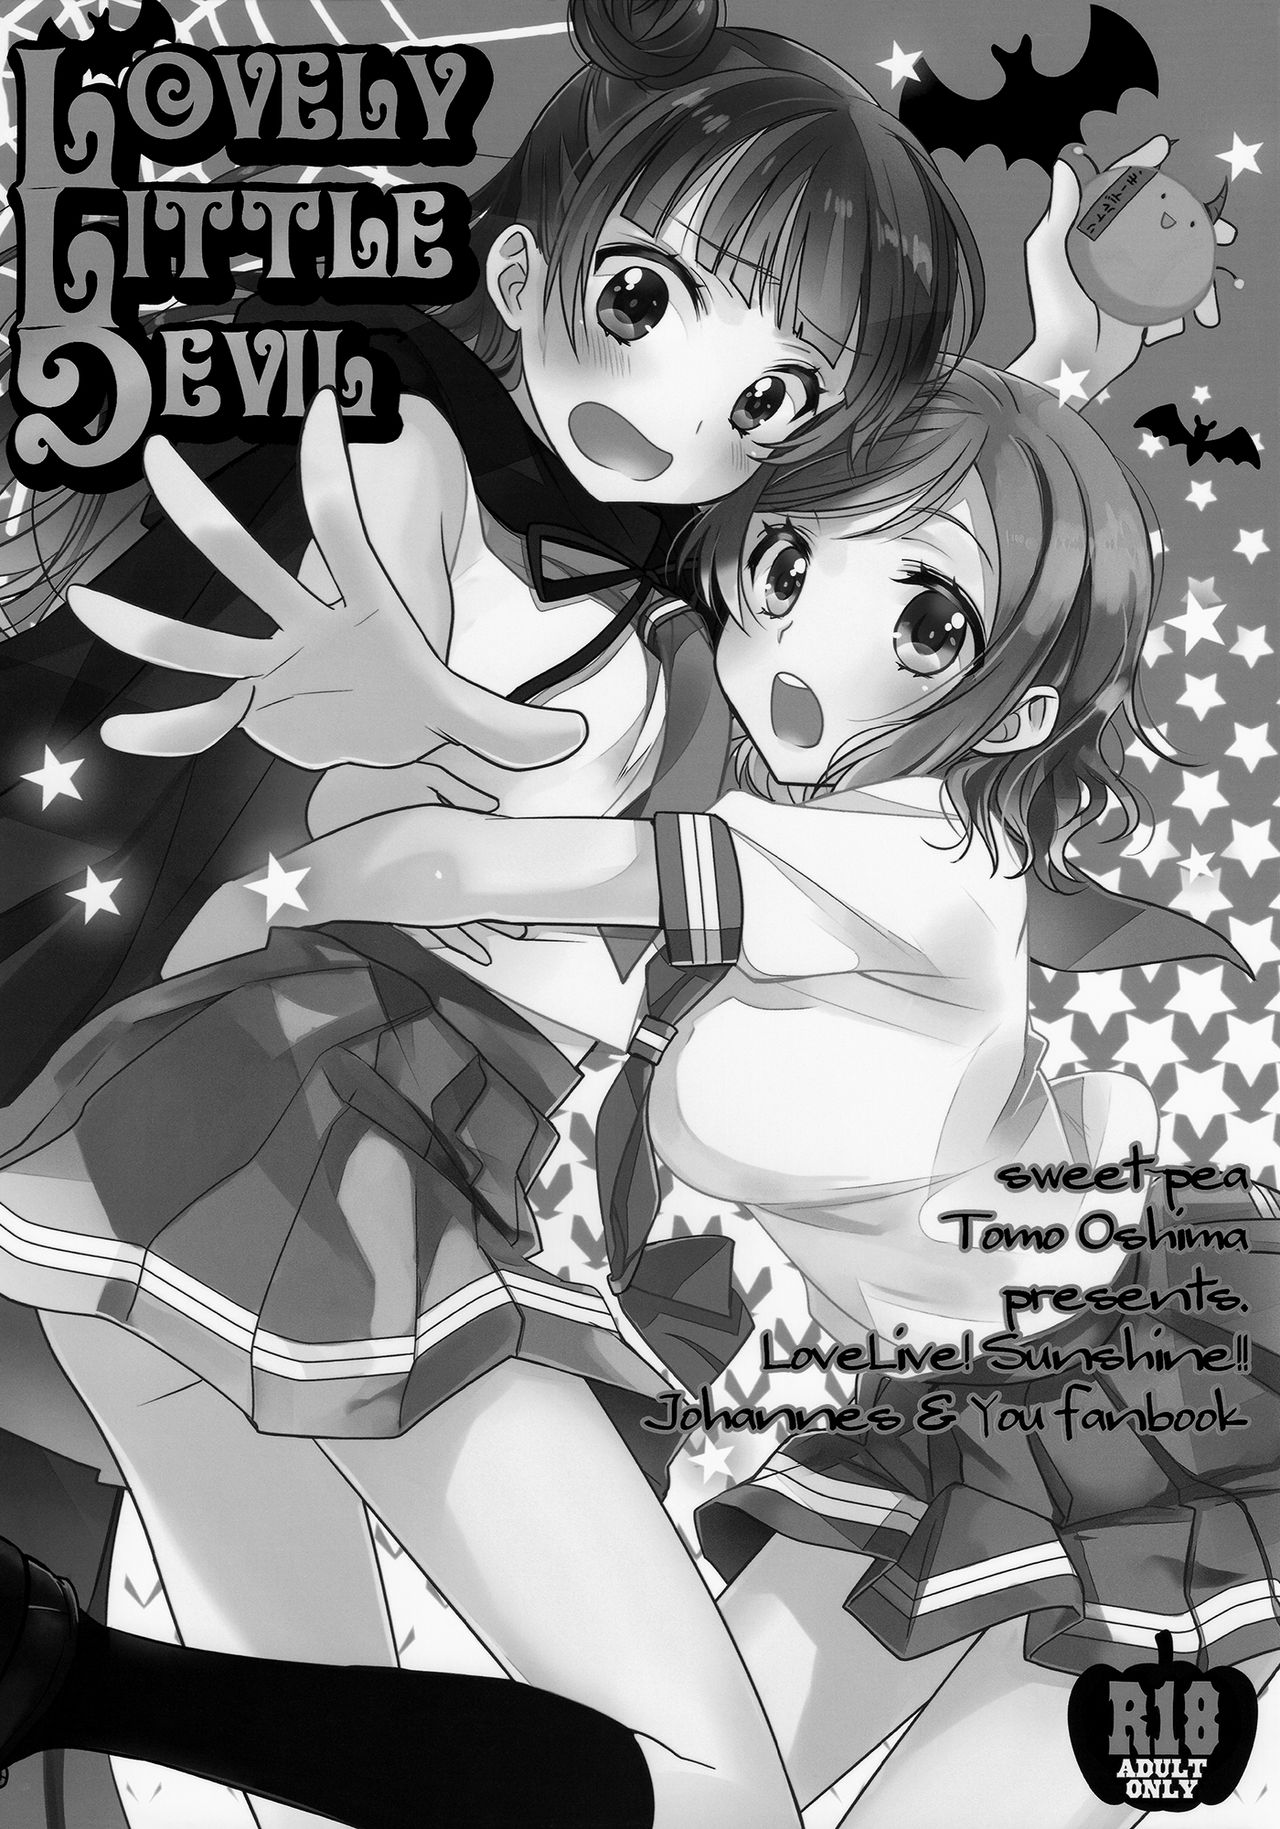 (BokuLove! Sunshine in Numazu) [Imomuya Honpo - Singleton, Sweet Pea (Azuma Yuki, Ooshima Tomo)] Lovely Little Devil (Love Live! Sunshine!!) [English] [Doki Fansubs] (僕ラブ!サンシャインin沼津) [いもむや本舗 - Singleton、スイートピー (あずまゆき、大島智)] Lovely Little Devil (ラブライブ! サンシャイン!!) [英訳]